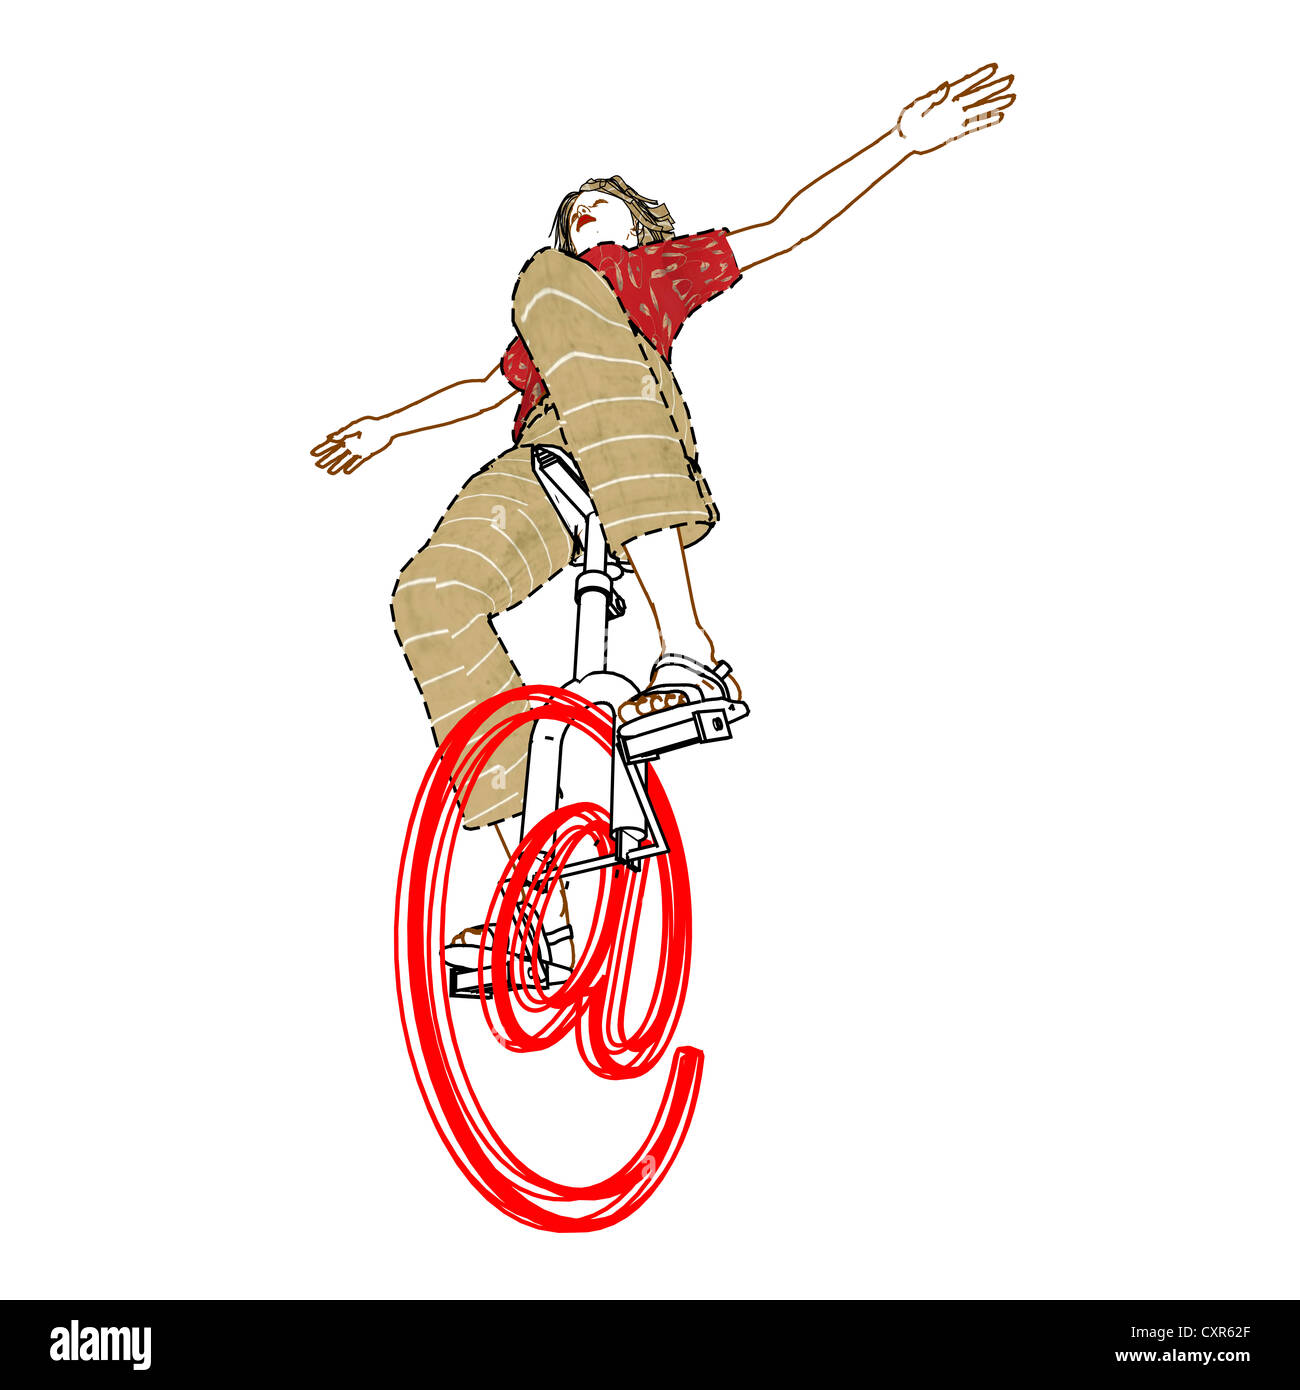 Vélo femme sur un symbole 'at' en l'utilisant comme un monocycle, image symbolique, surfer sur internet, illustration Banque D'Images